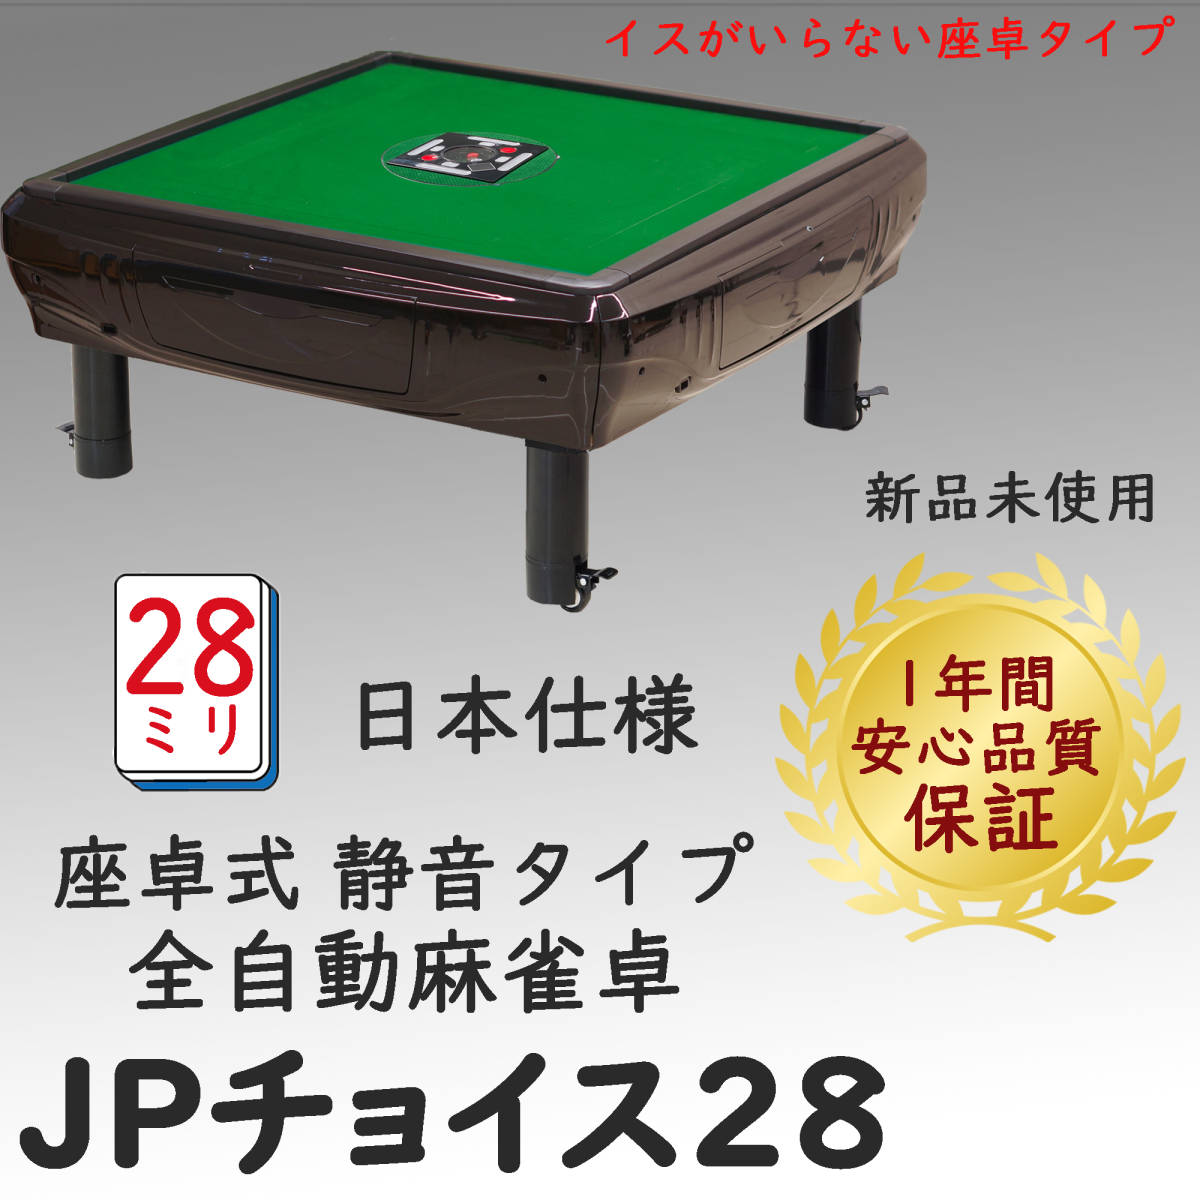 新品 座卓 全自動麻雀卓 JPチョイス 28mm 静音タイプ 日本仕様 安心1年